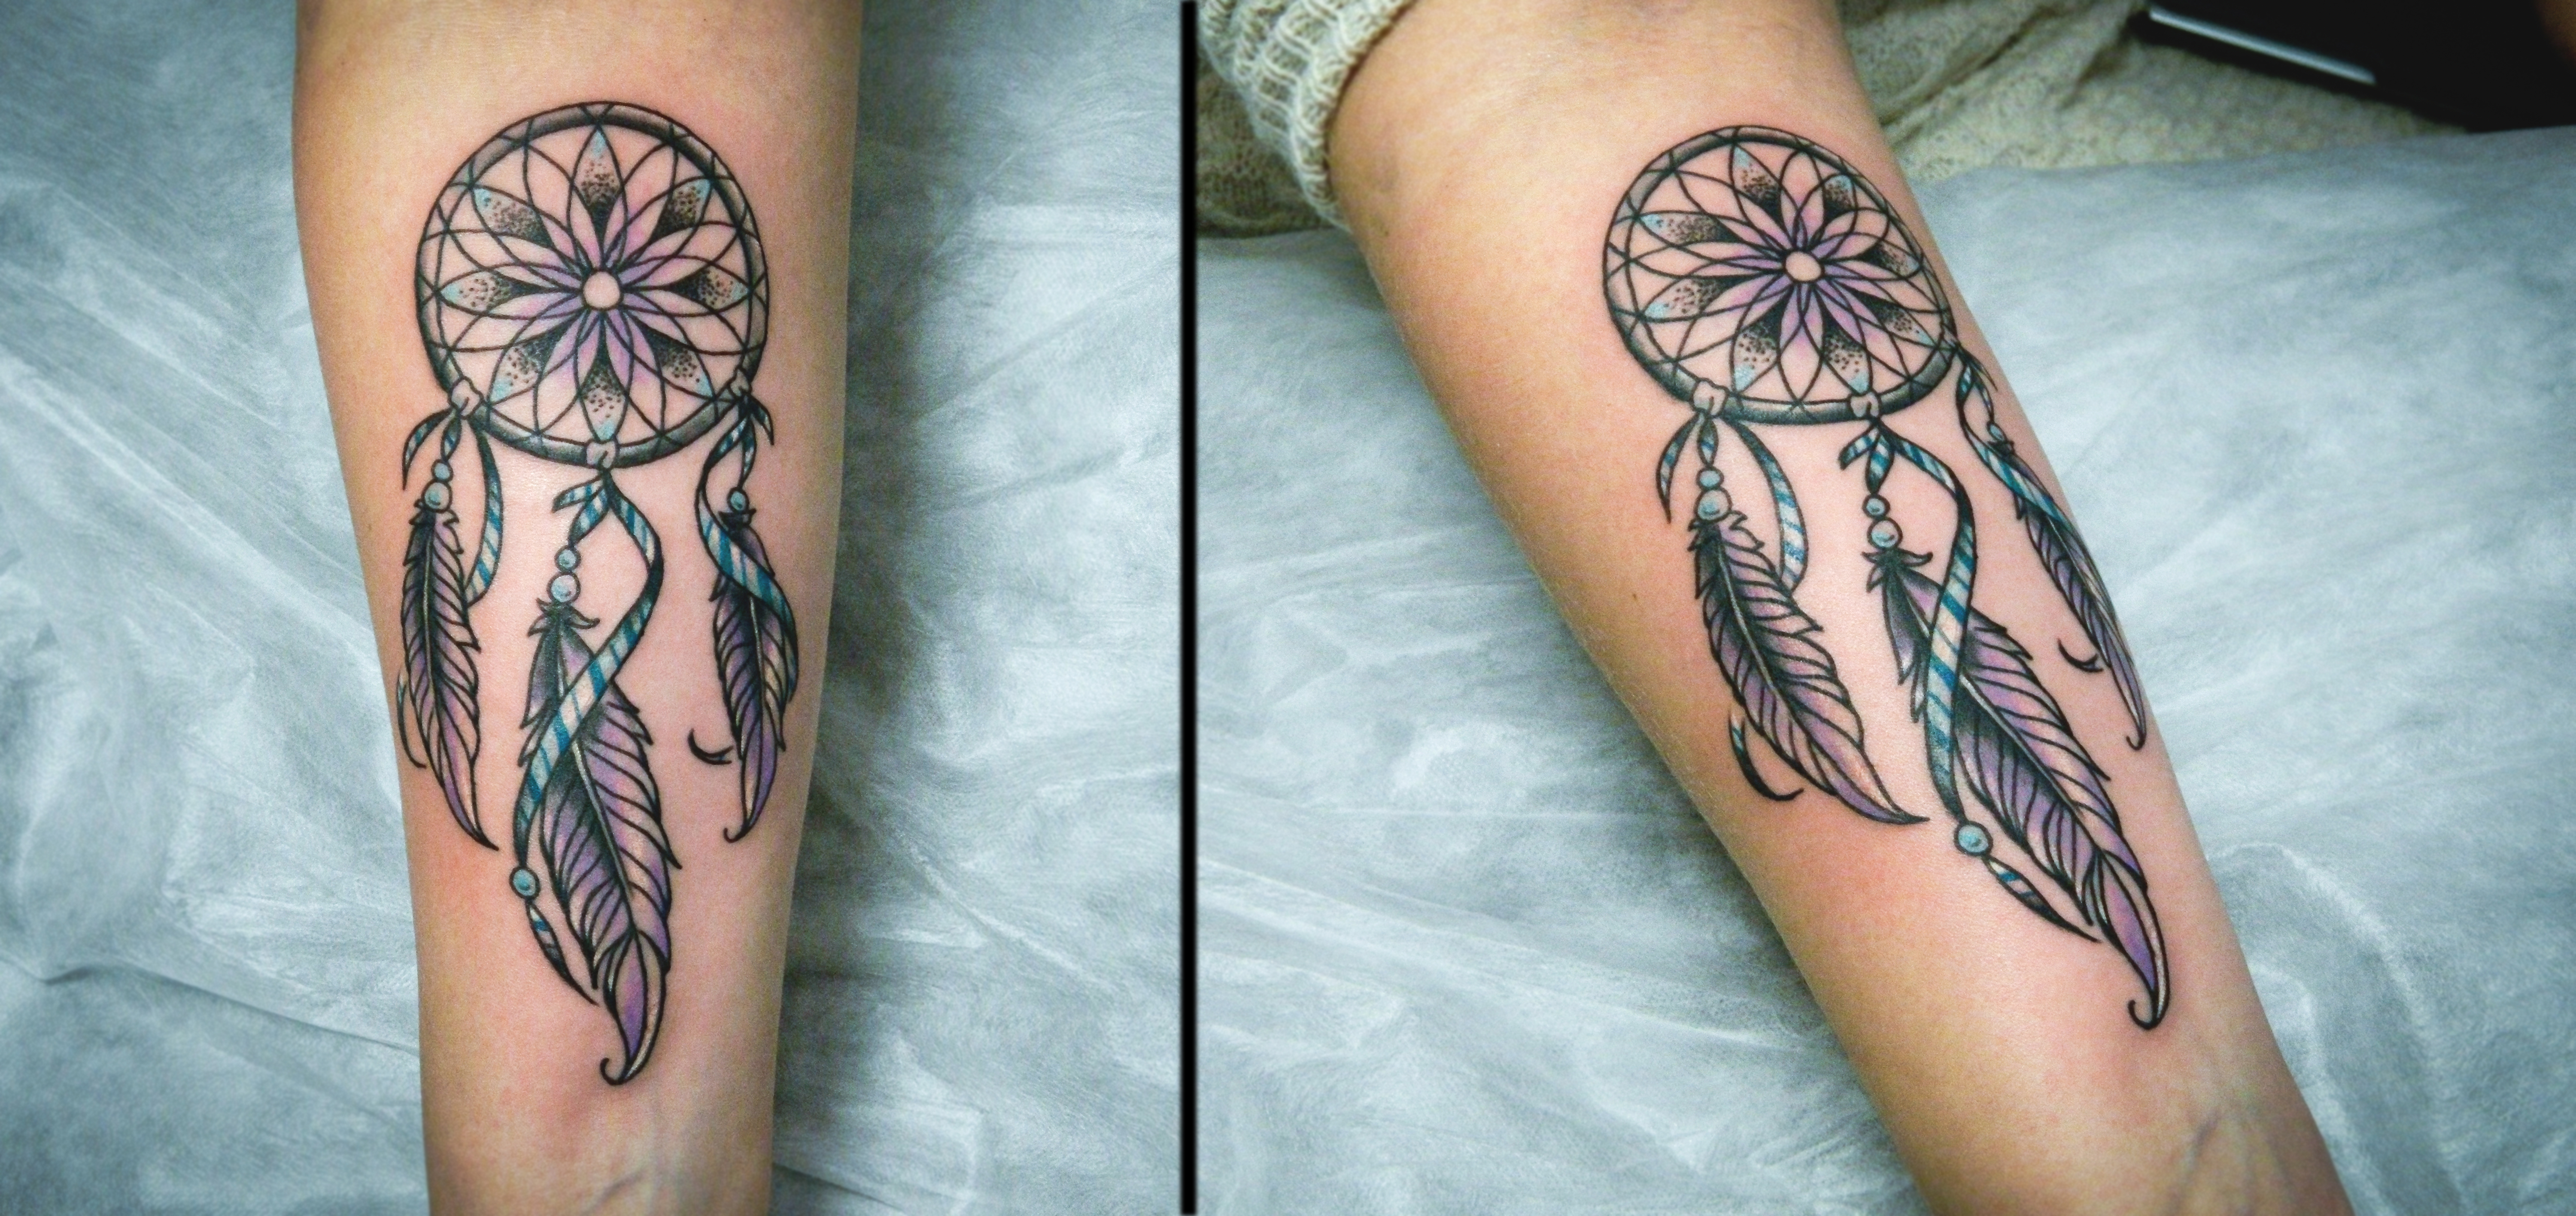 Все значения татуировки ловец снов — кому подойдет этот символ?